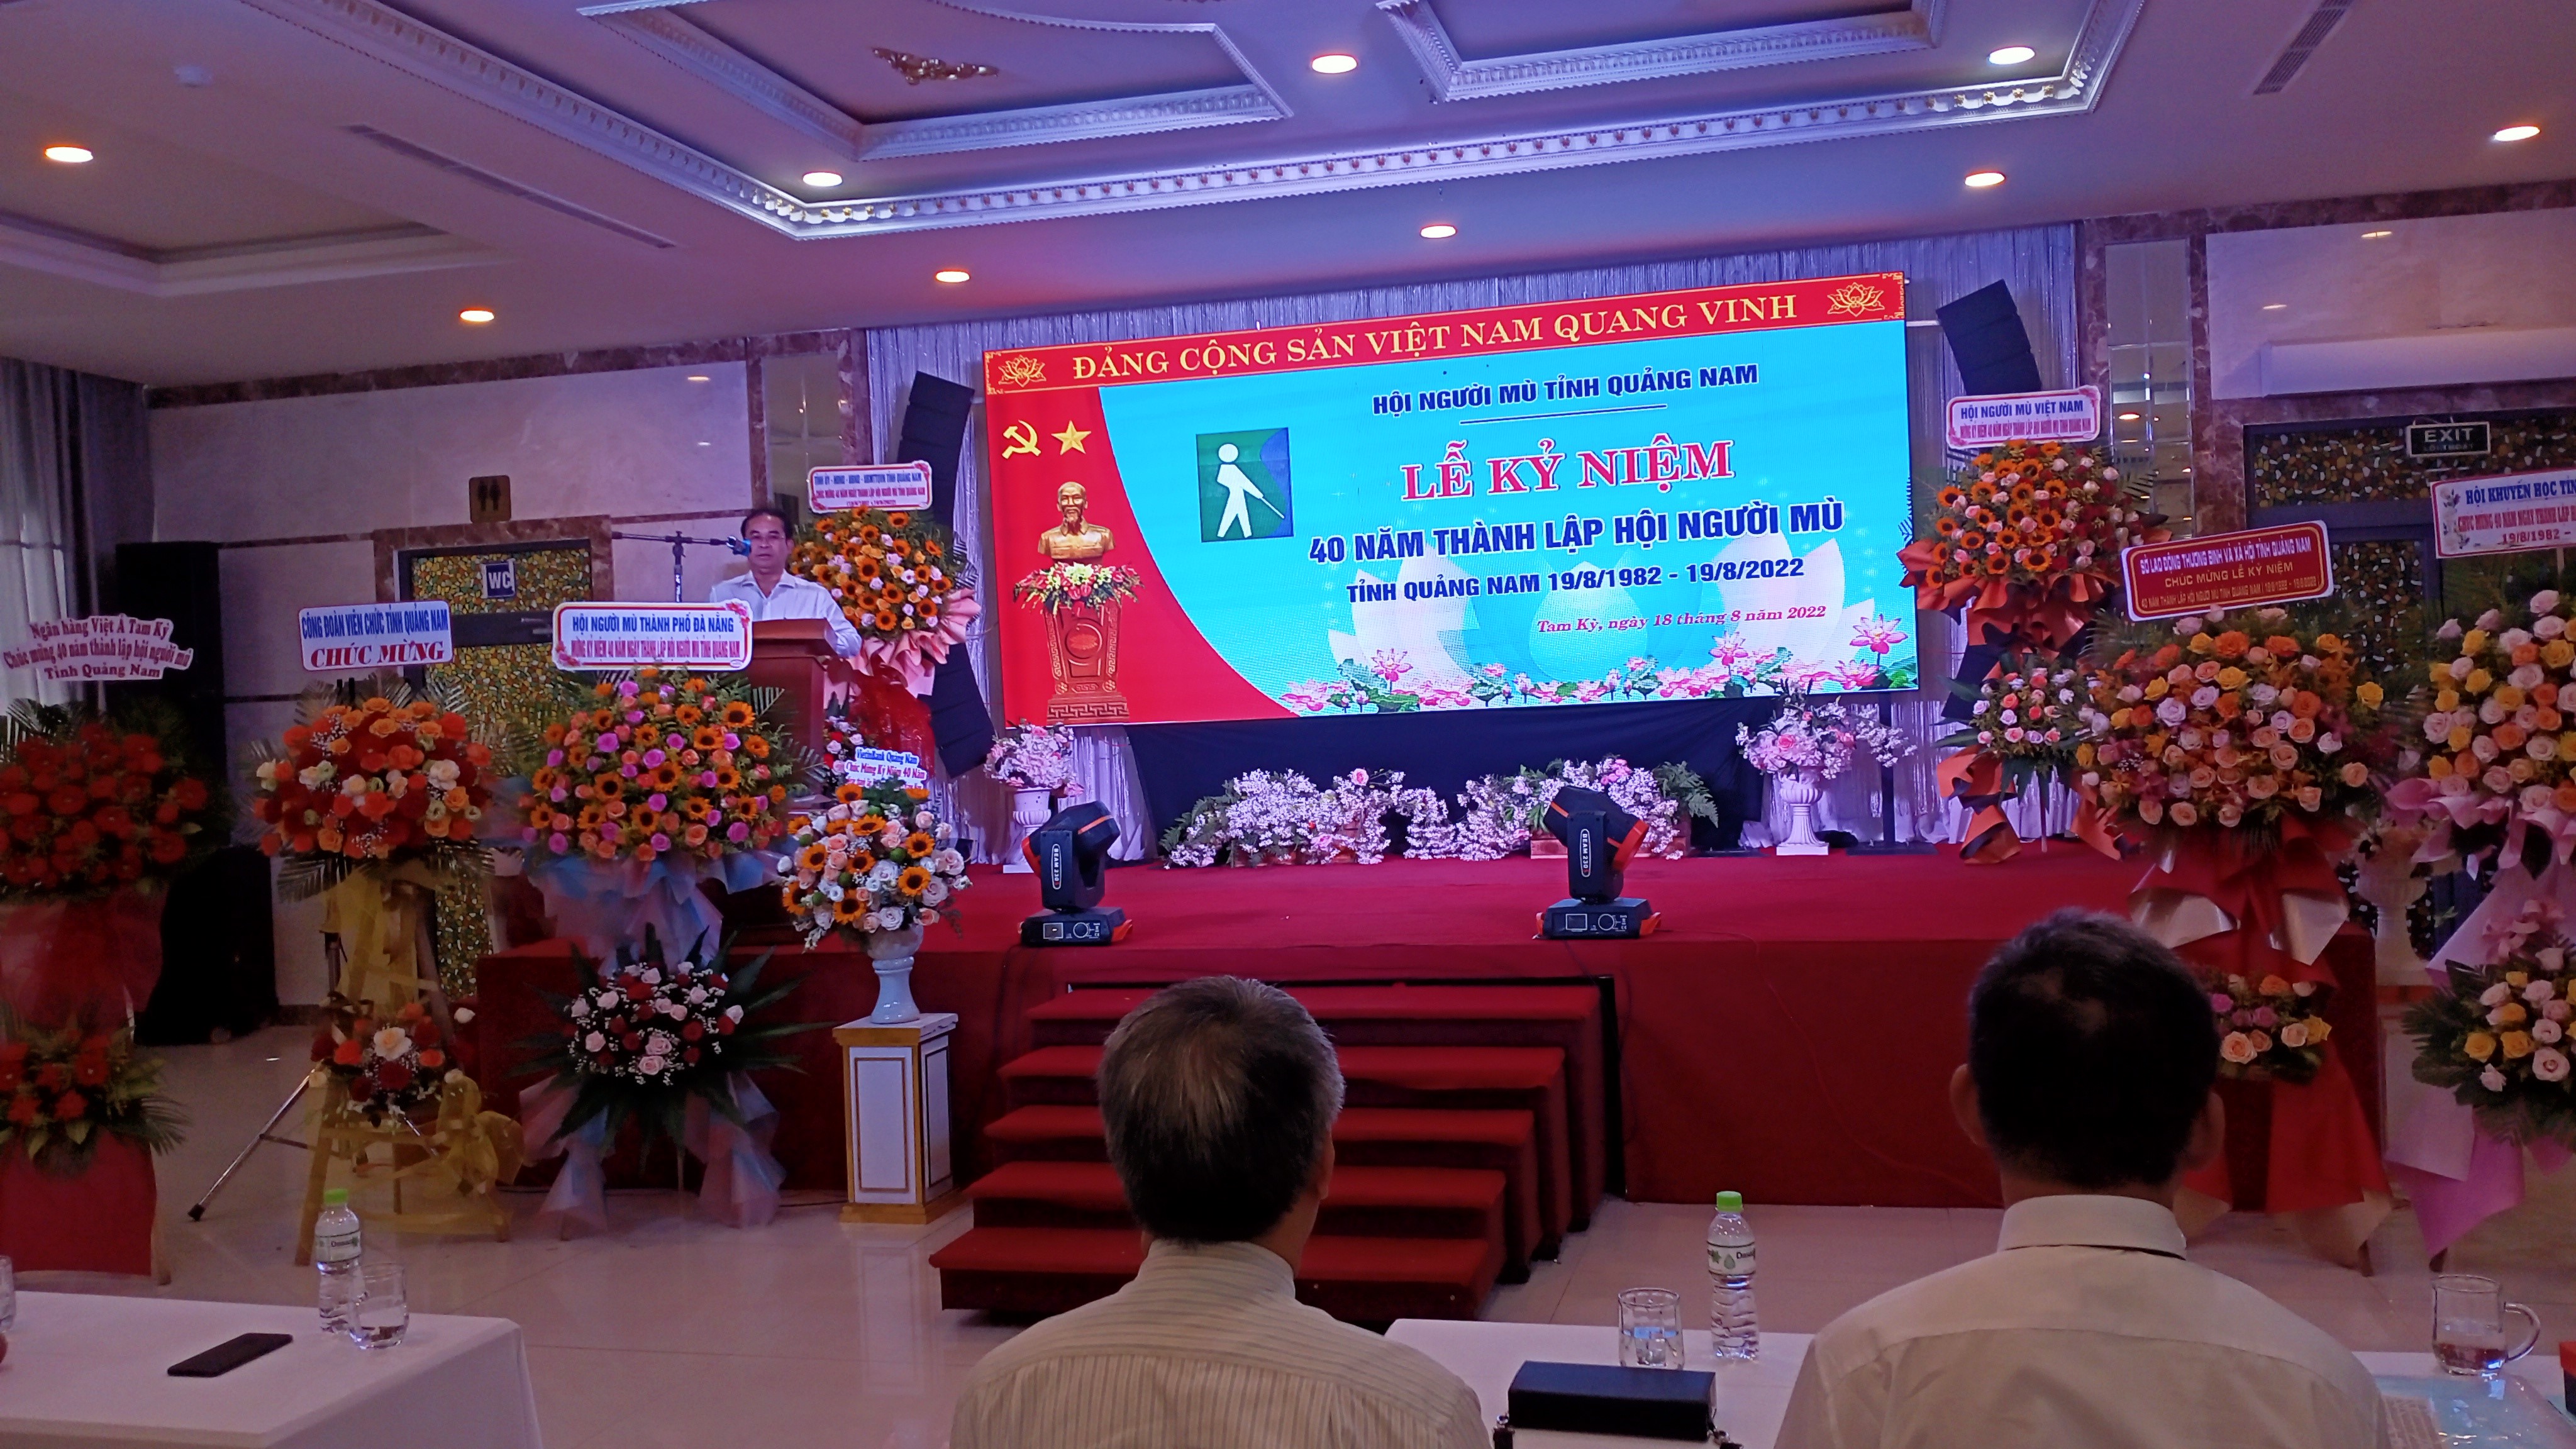 Lễ kỷ niệm 40 năm thành lập Hội Người mù tỉnh Quảng Nam 